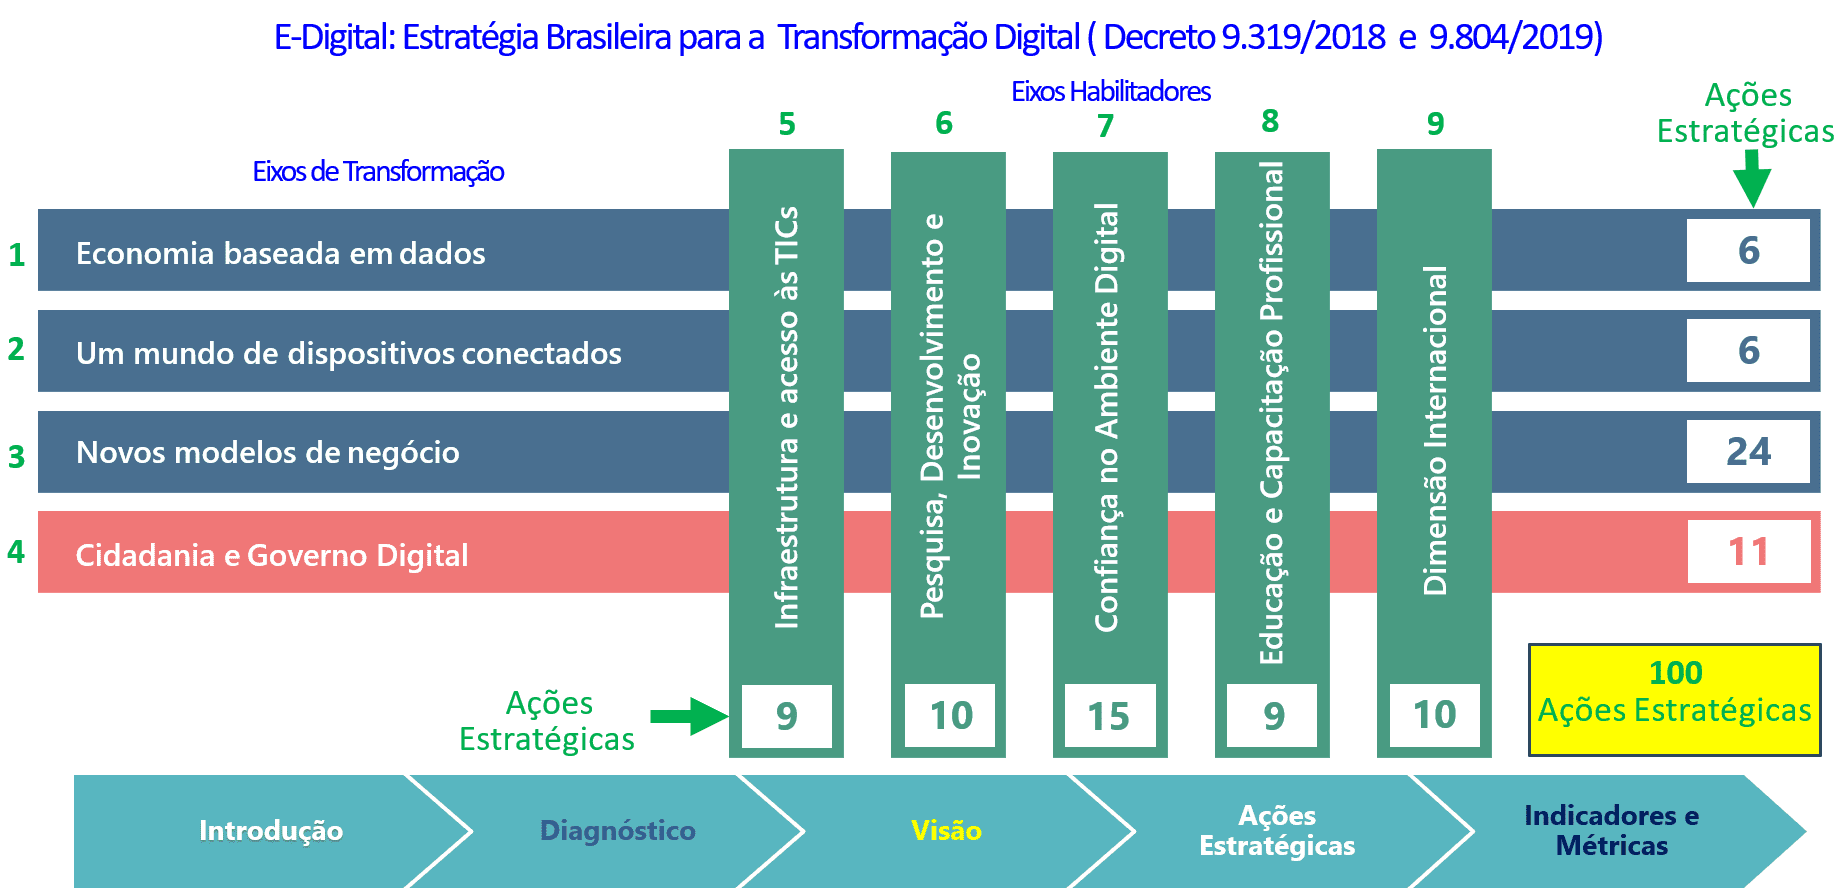 E-Digital: Estratégia Brasileira para Transformação Digital